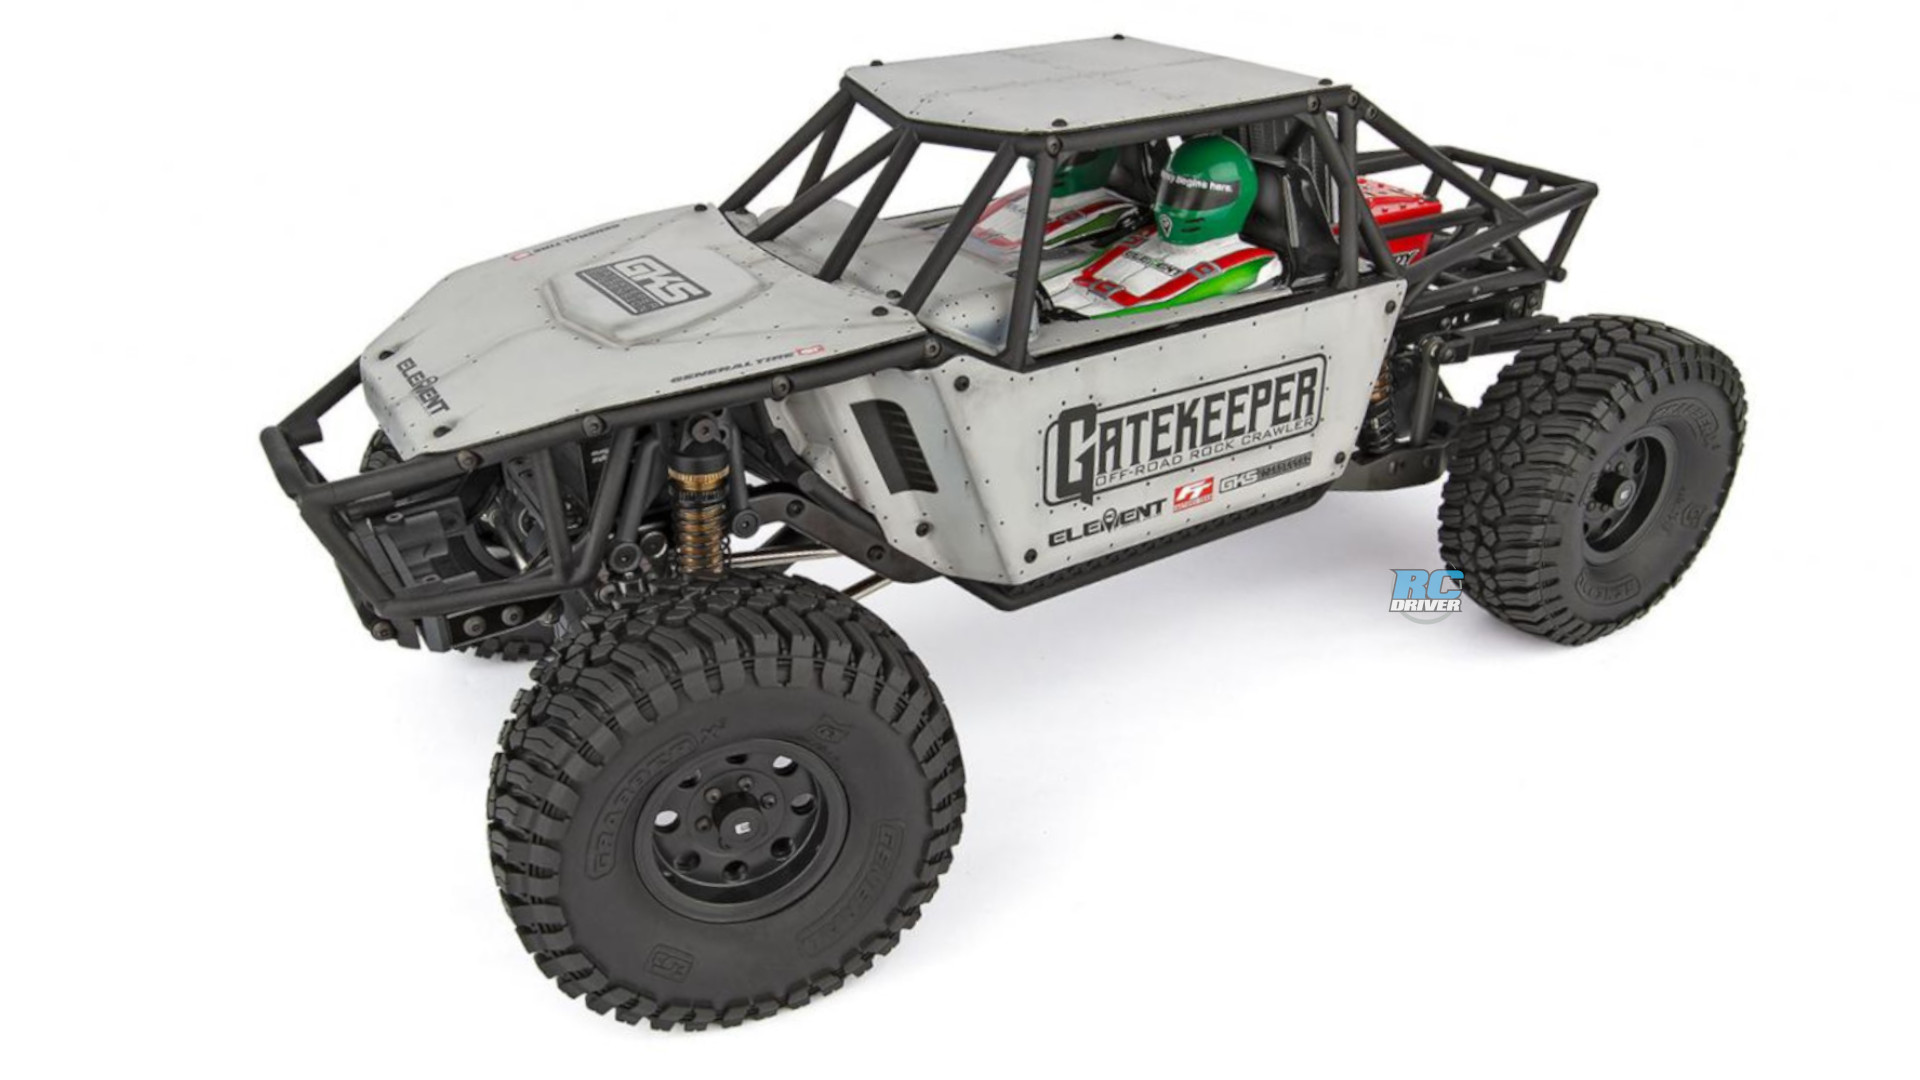 Element RC Enduro Gatekeeper Rock Crawler/Trail truck builder’s kit